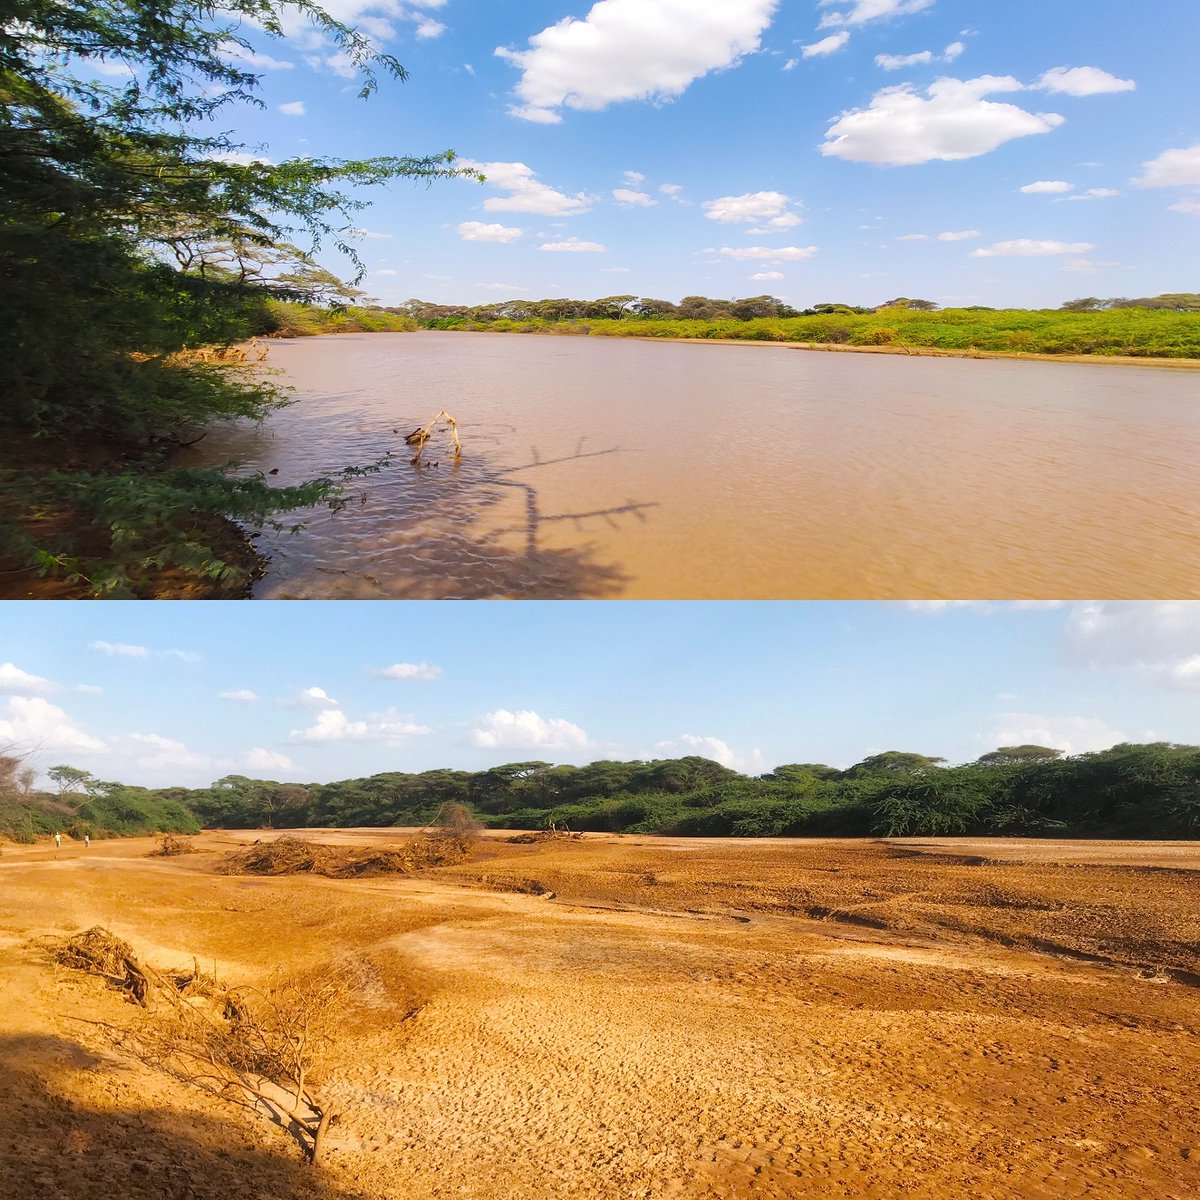 Contrast of Ewaso Nyiro river near Lorian swamp during the dry and rainy season.